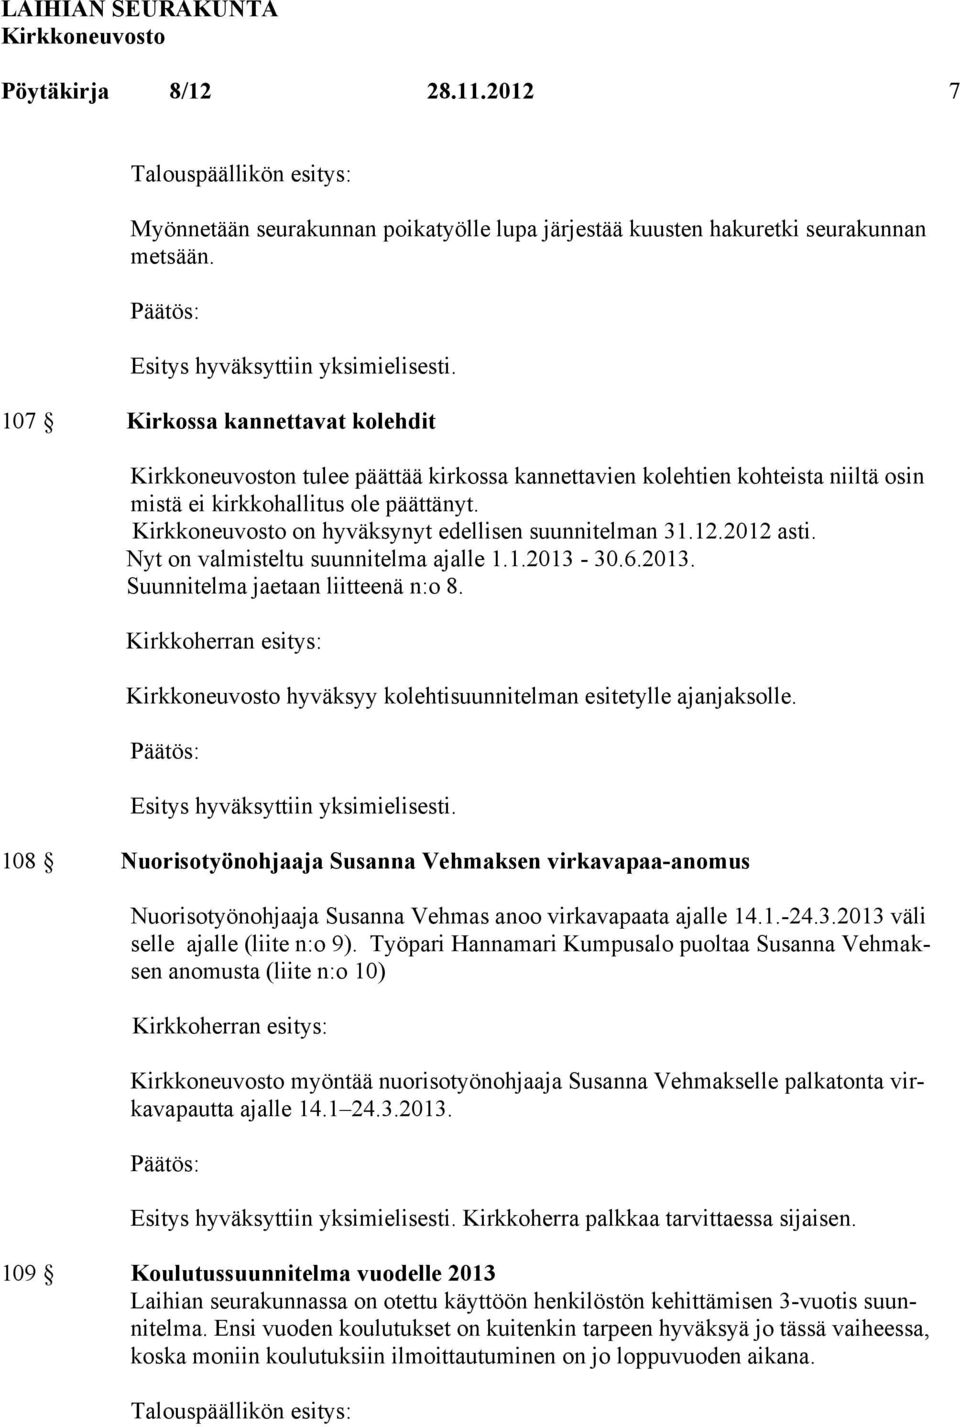 Nyt on valmisteltu suunnitelma ajalle 1.1.2013-30.6.2013. Suunnitelma jaetaan liitteenä n:o 8. Kirkkoherran esitys: hyväksyy kolehtisuunnitelman esitetylle ajanjaksolle.